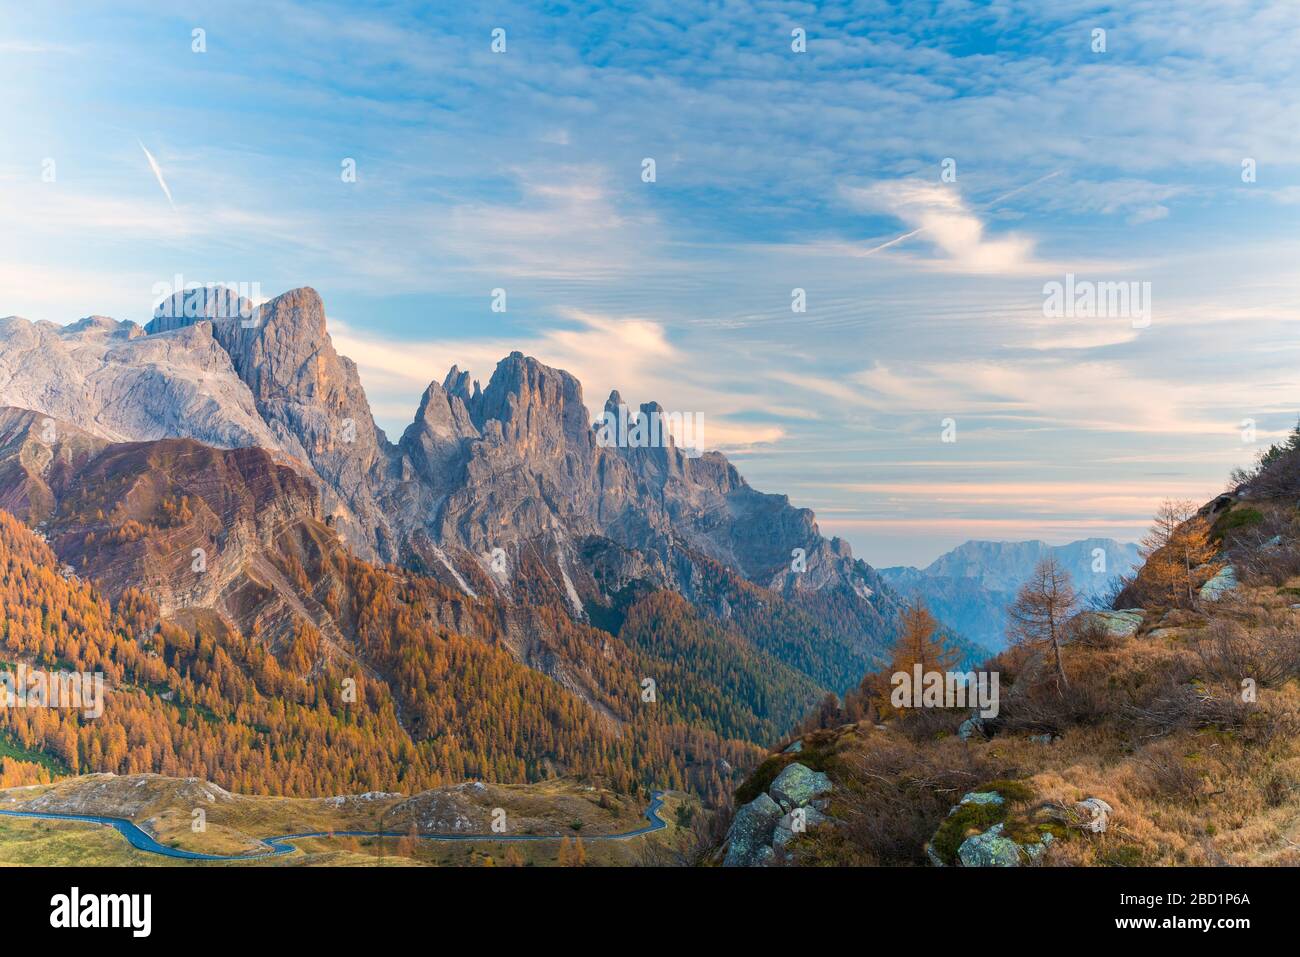 Bosques en otoño con pala di San Martino y cima Della Rosetta al fondo, Pale di San Martino, Rolle Pass, Trentino, Italia, Europa Foto de stock